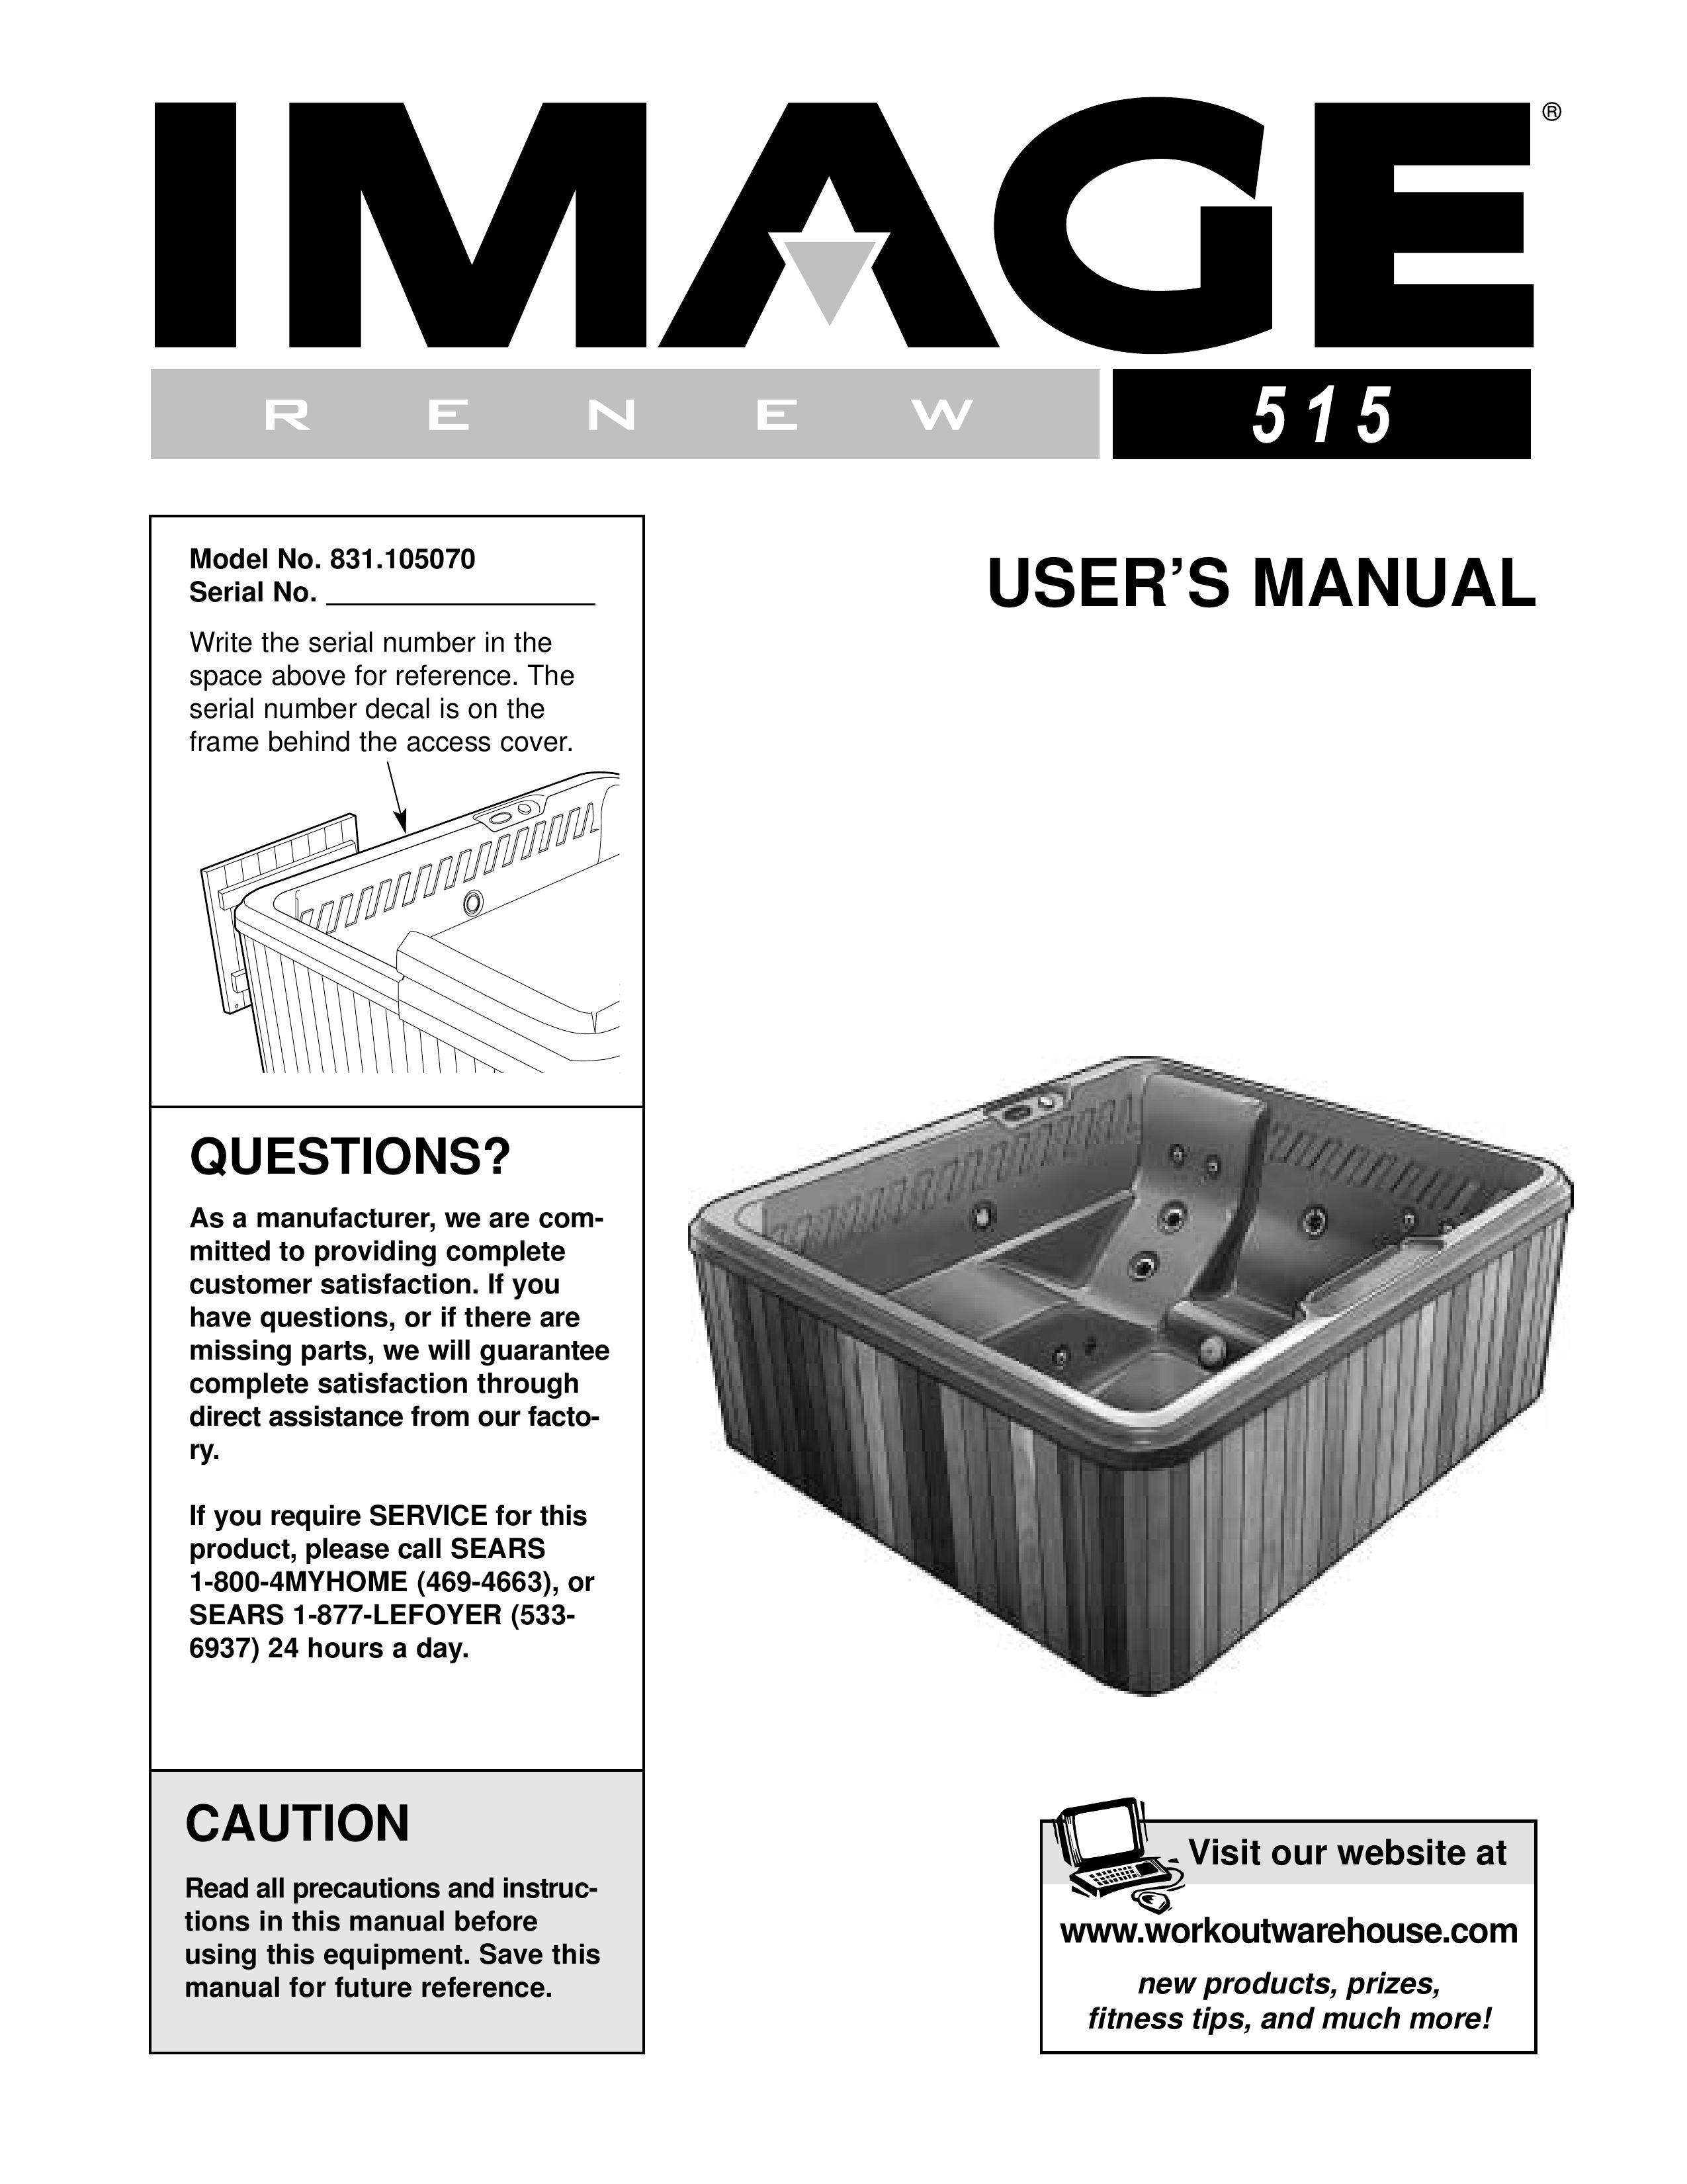 Inter-Tel 831.10507 Hot Tub User Manual